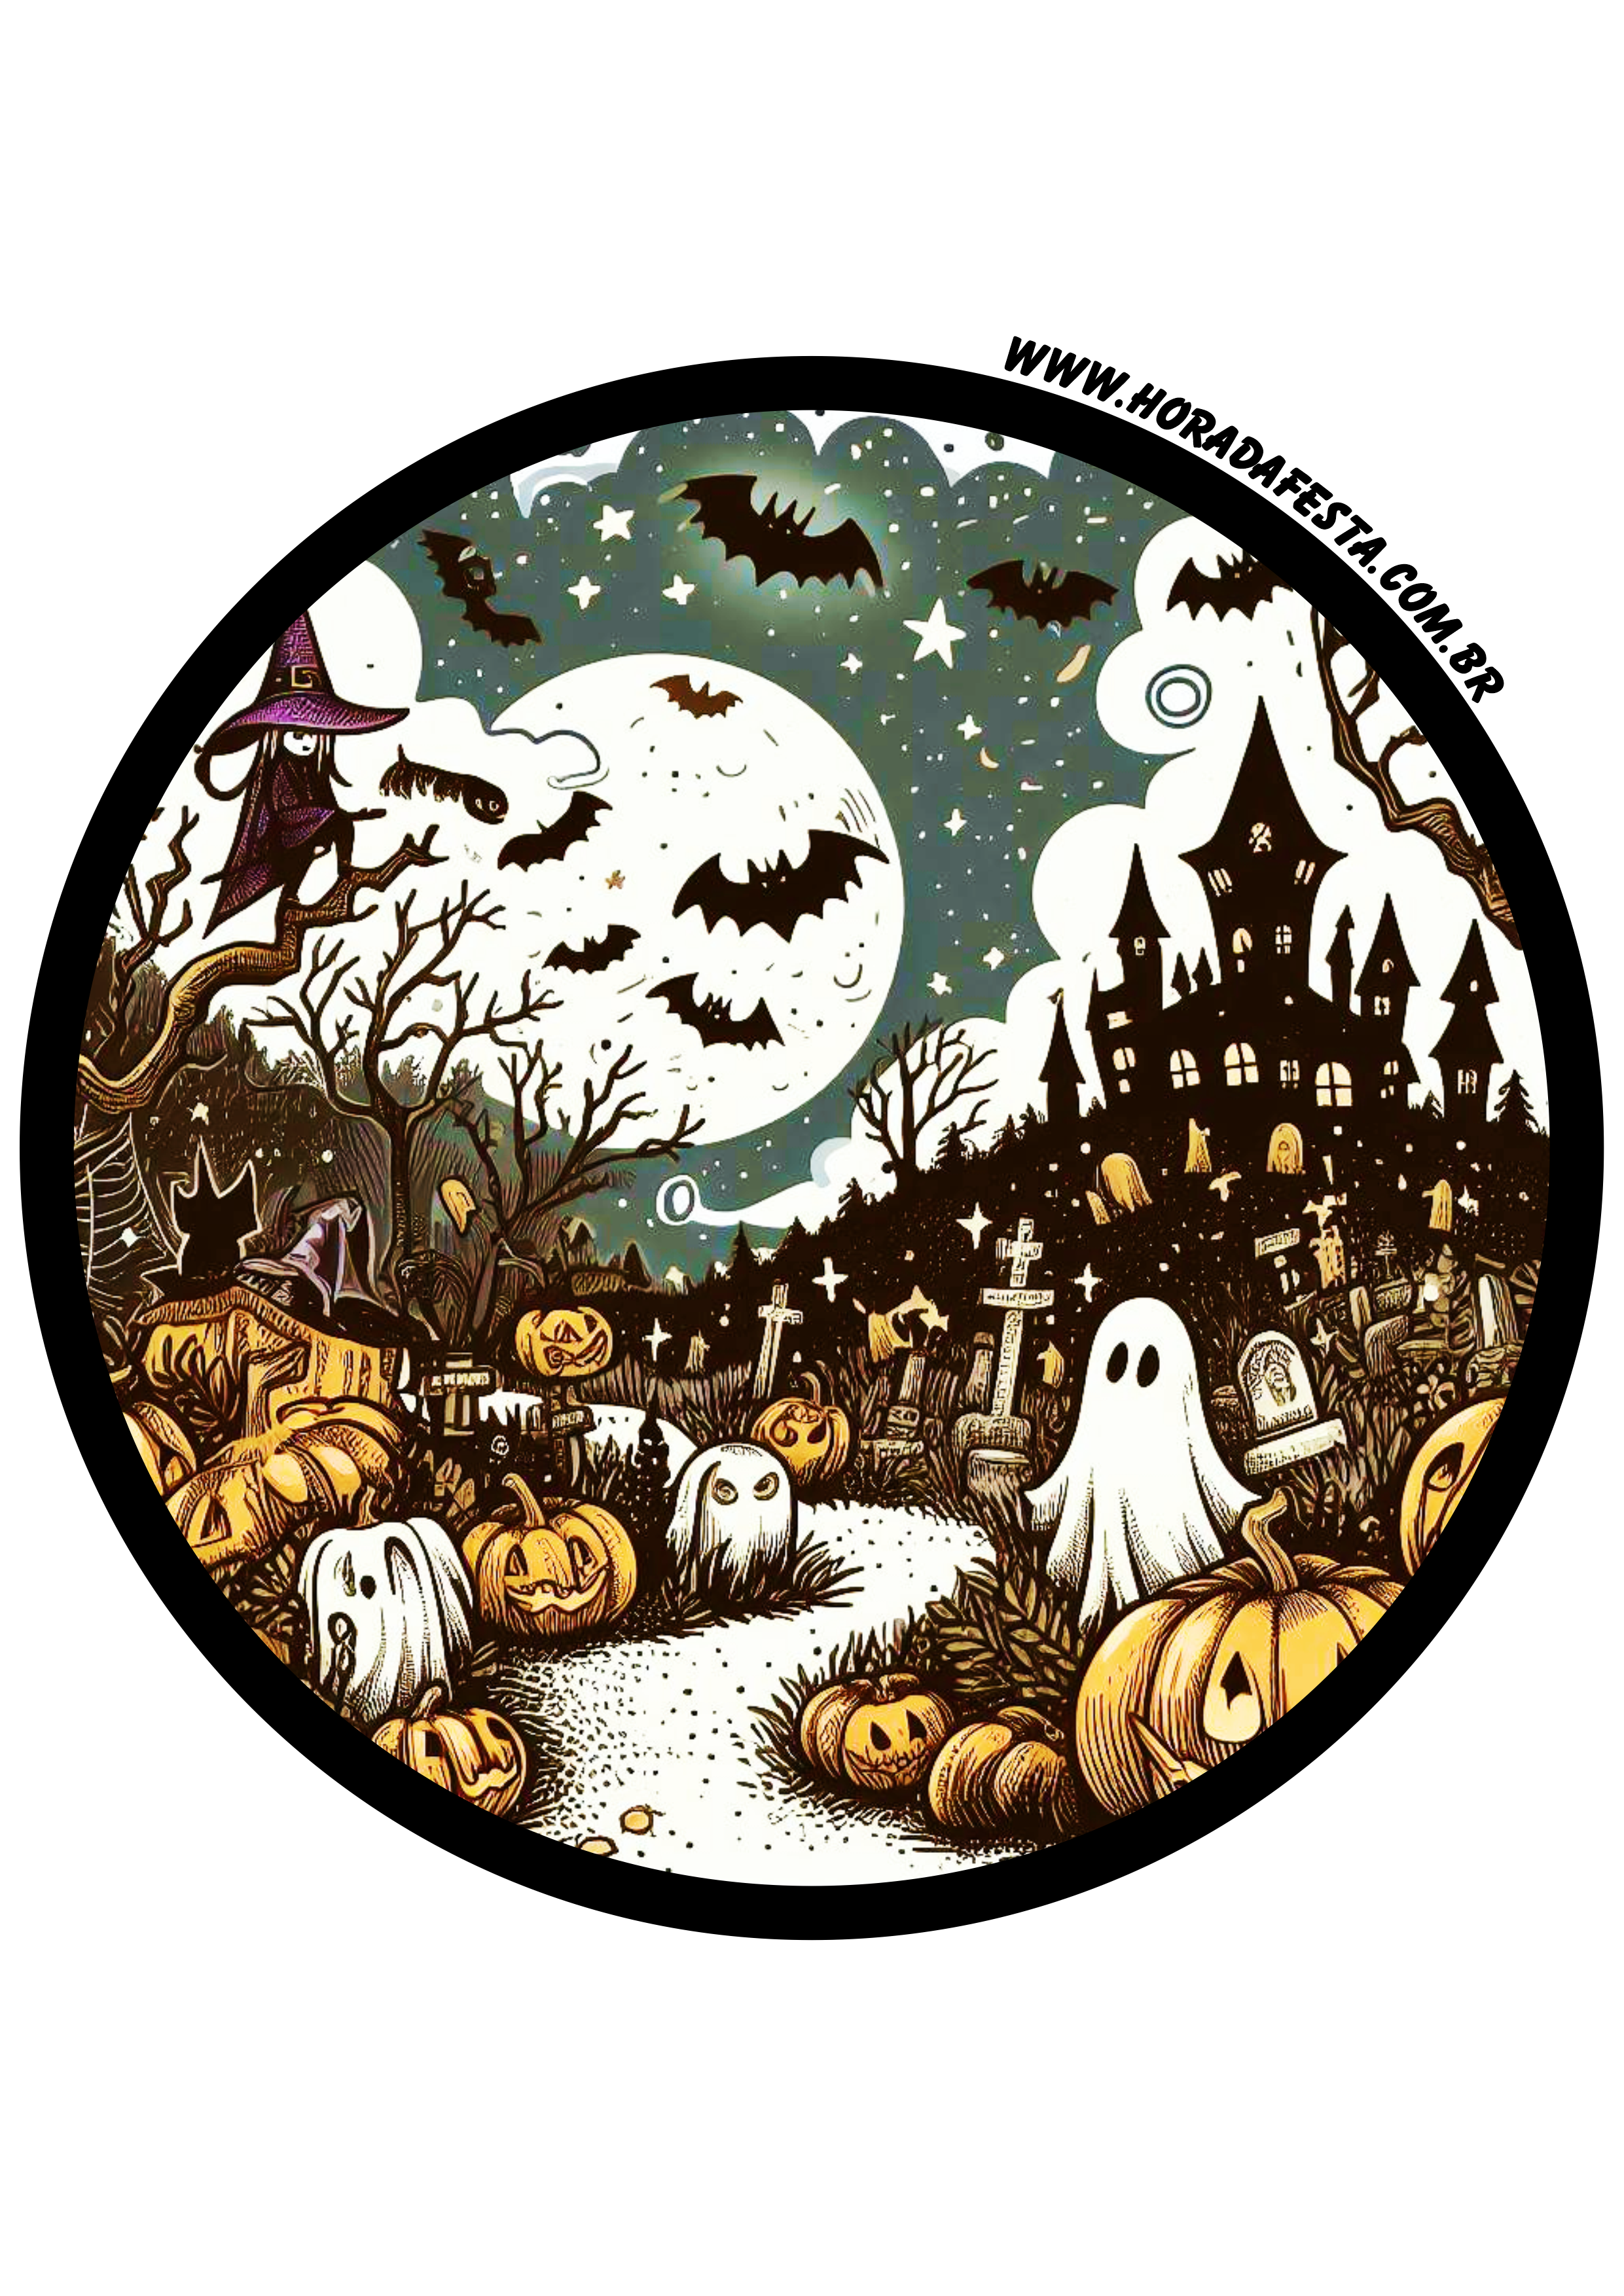 Halloween adesivo redondo tag sticker painel decoração dia das bruxas 30 de outubro png